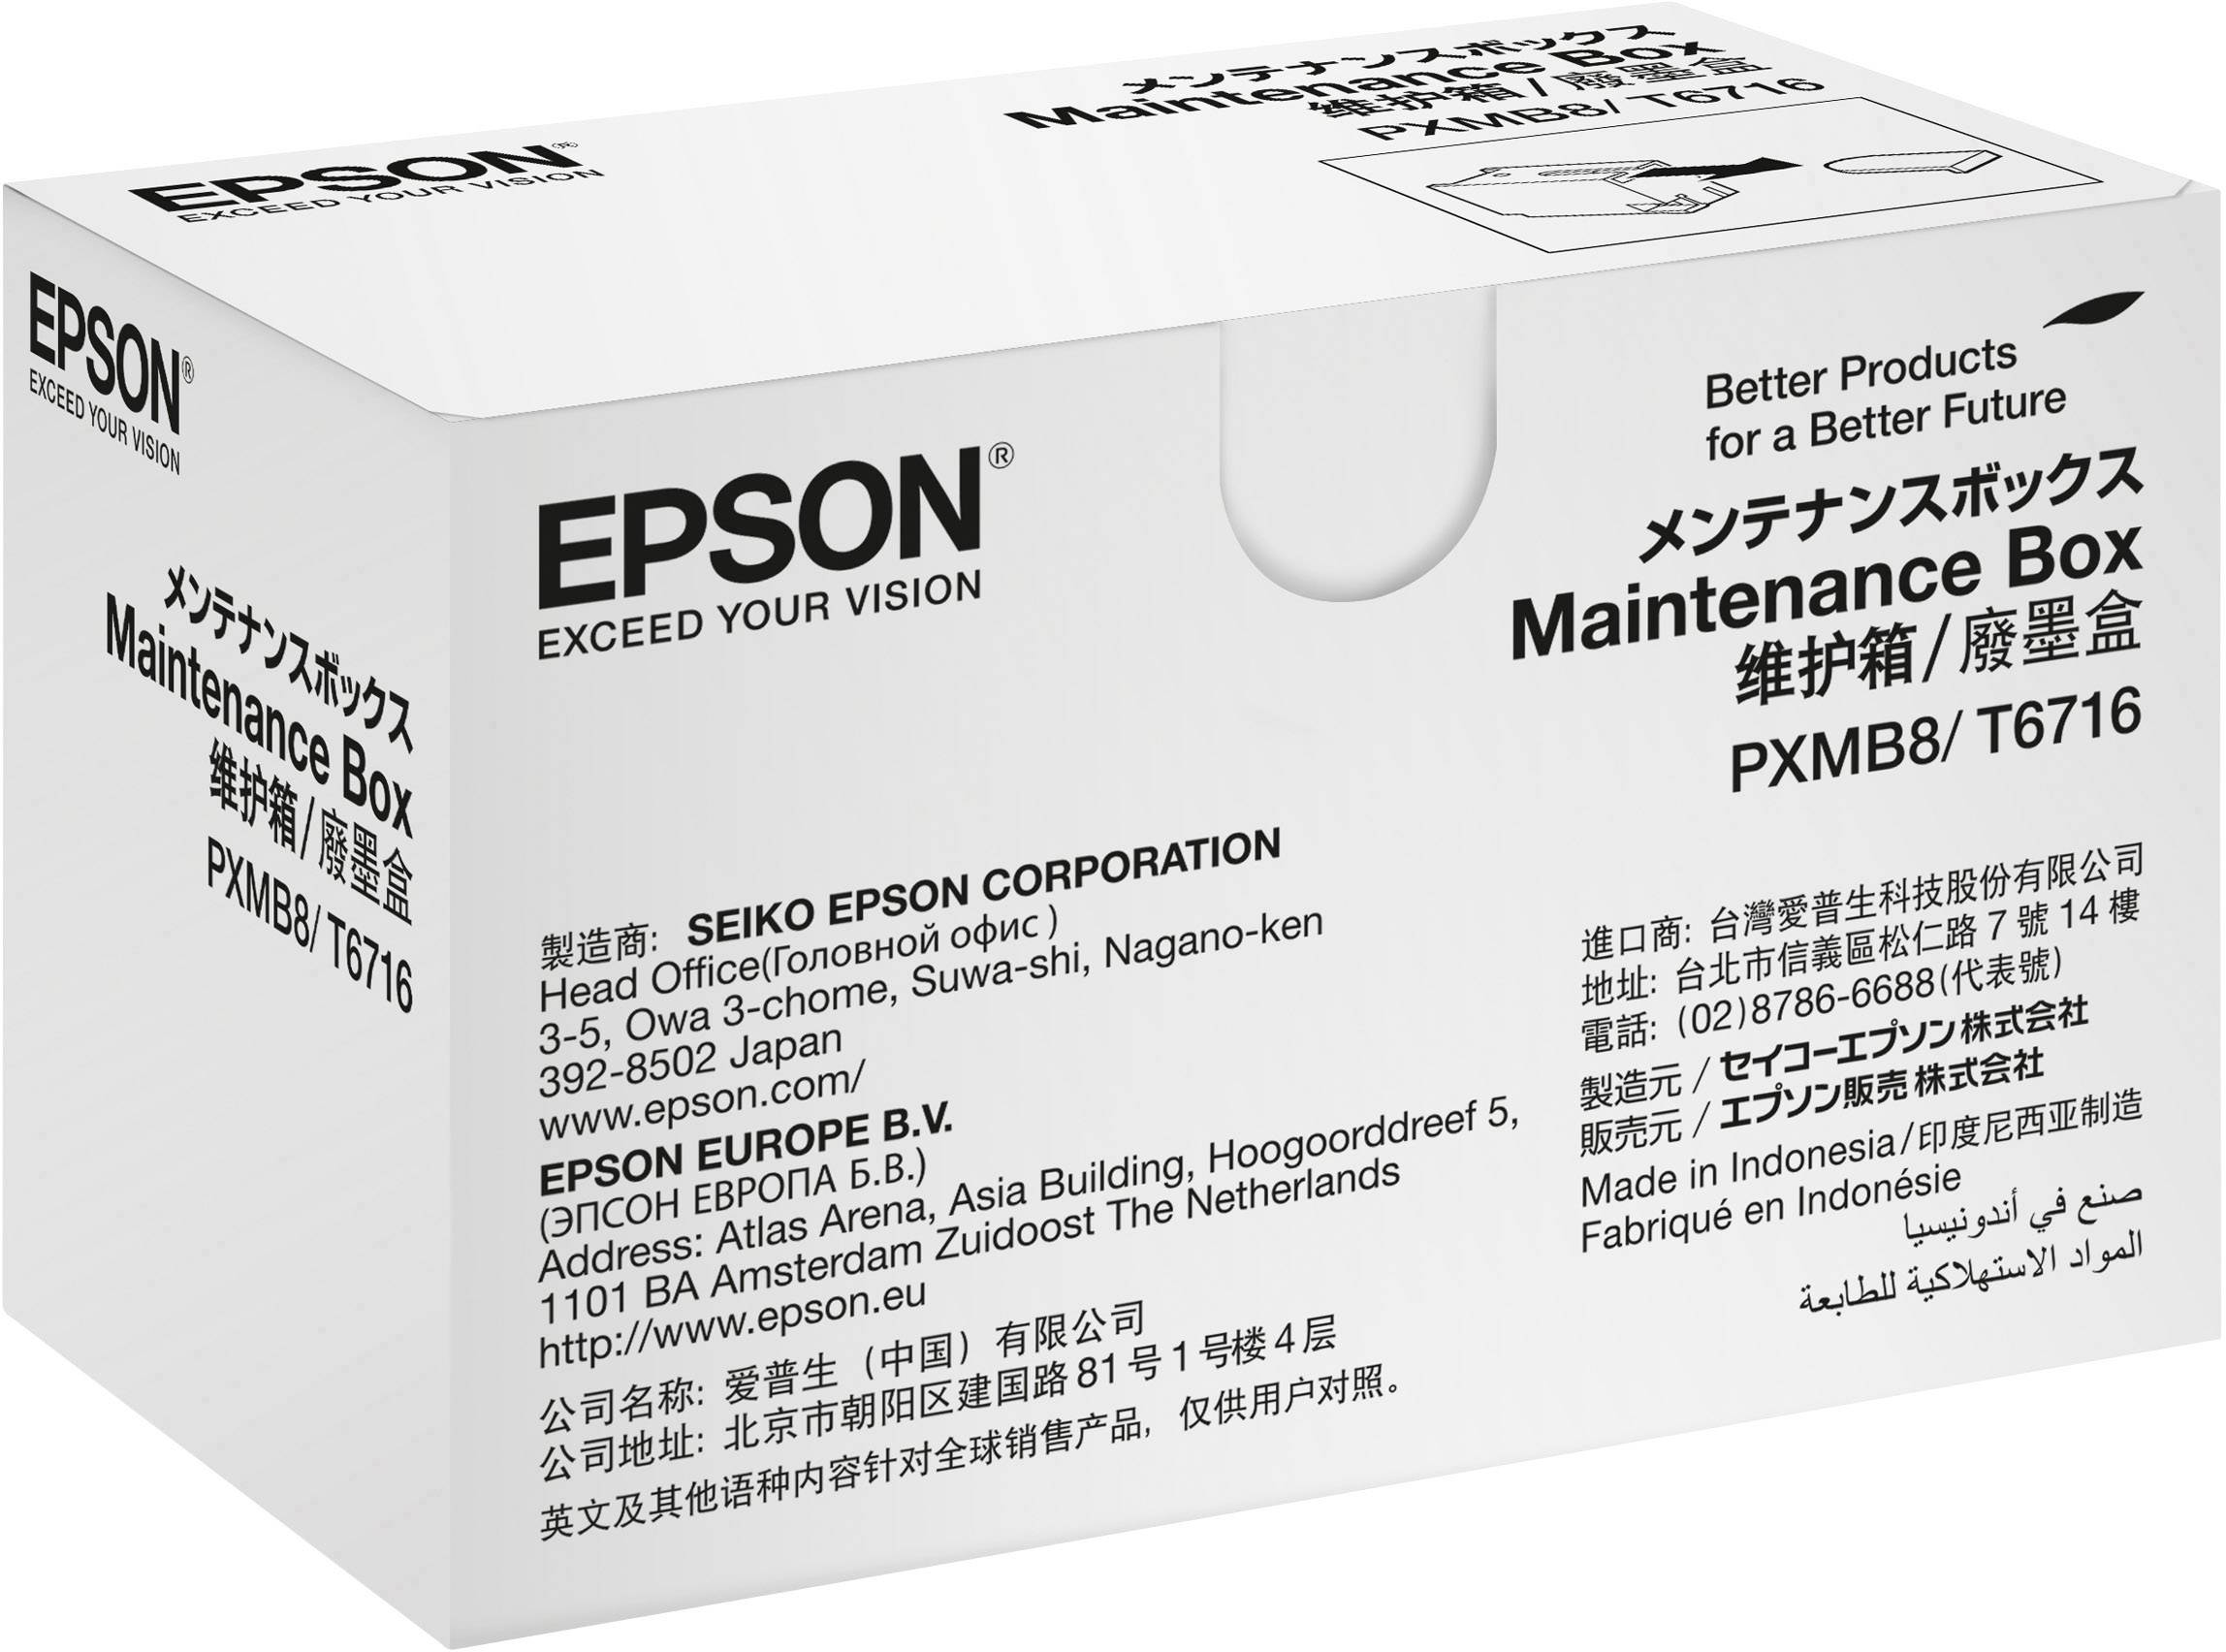 EPSON Tintenwartungstank